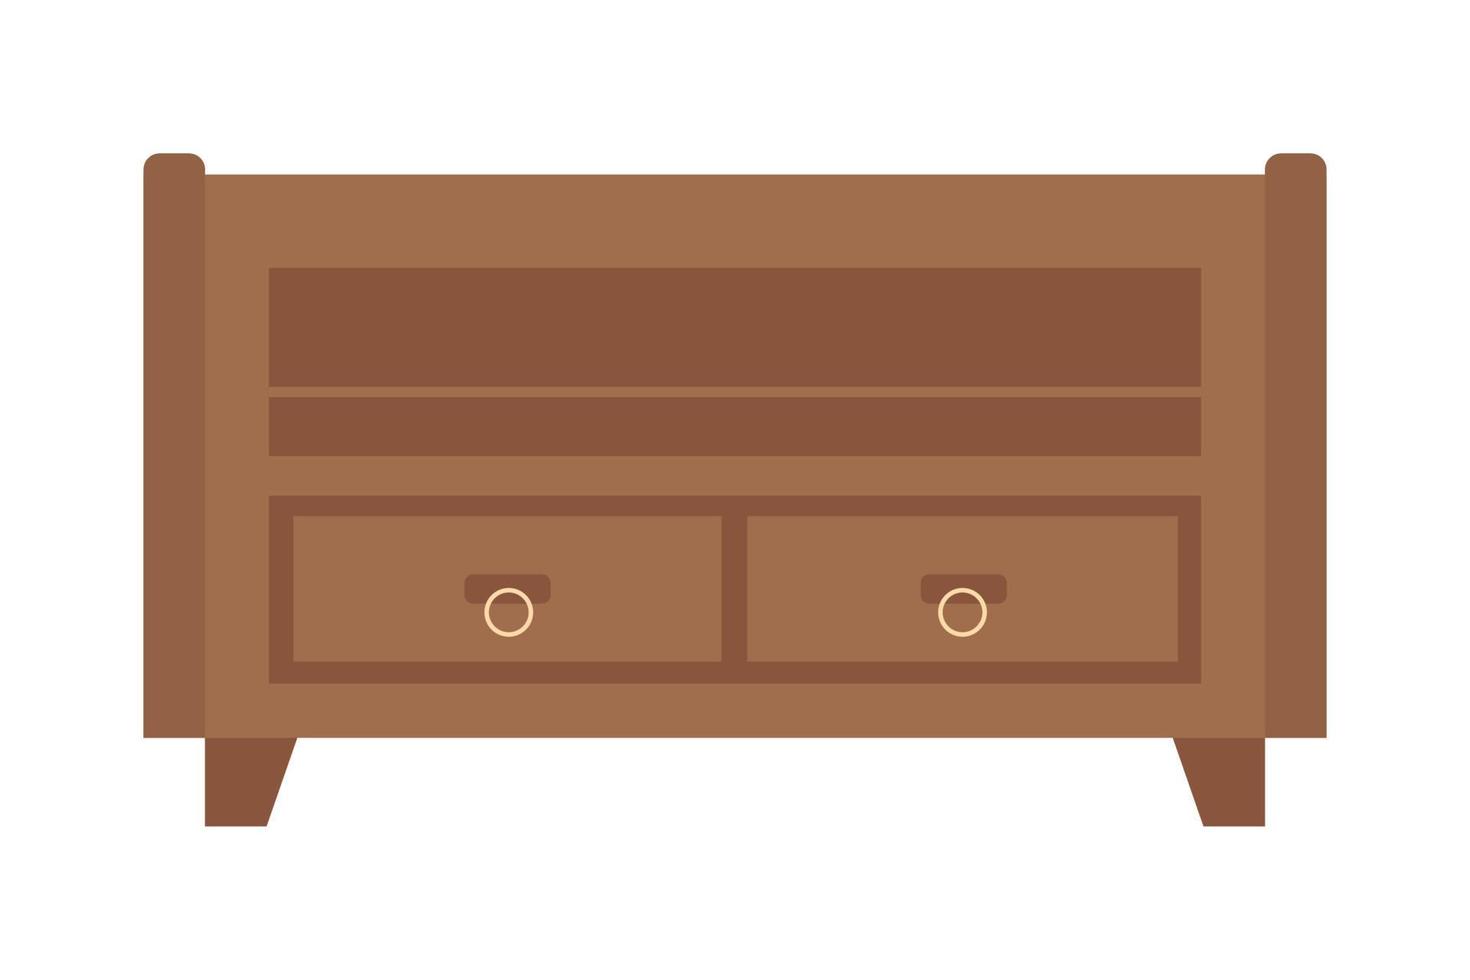 Objet vectoriel de couleur semi-plat de tiroir à la maison en bois